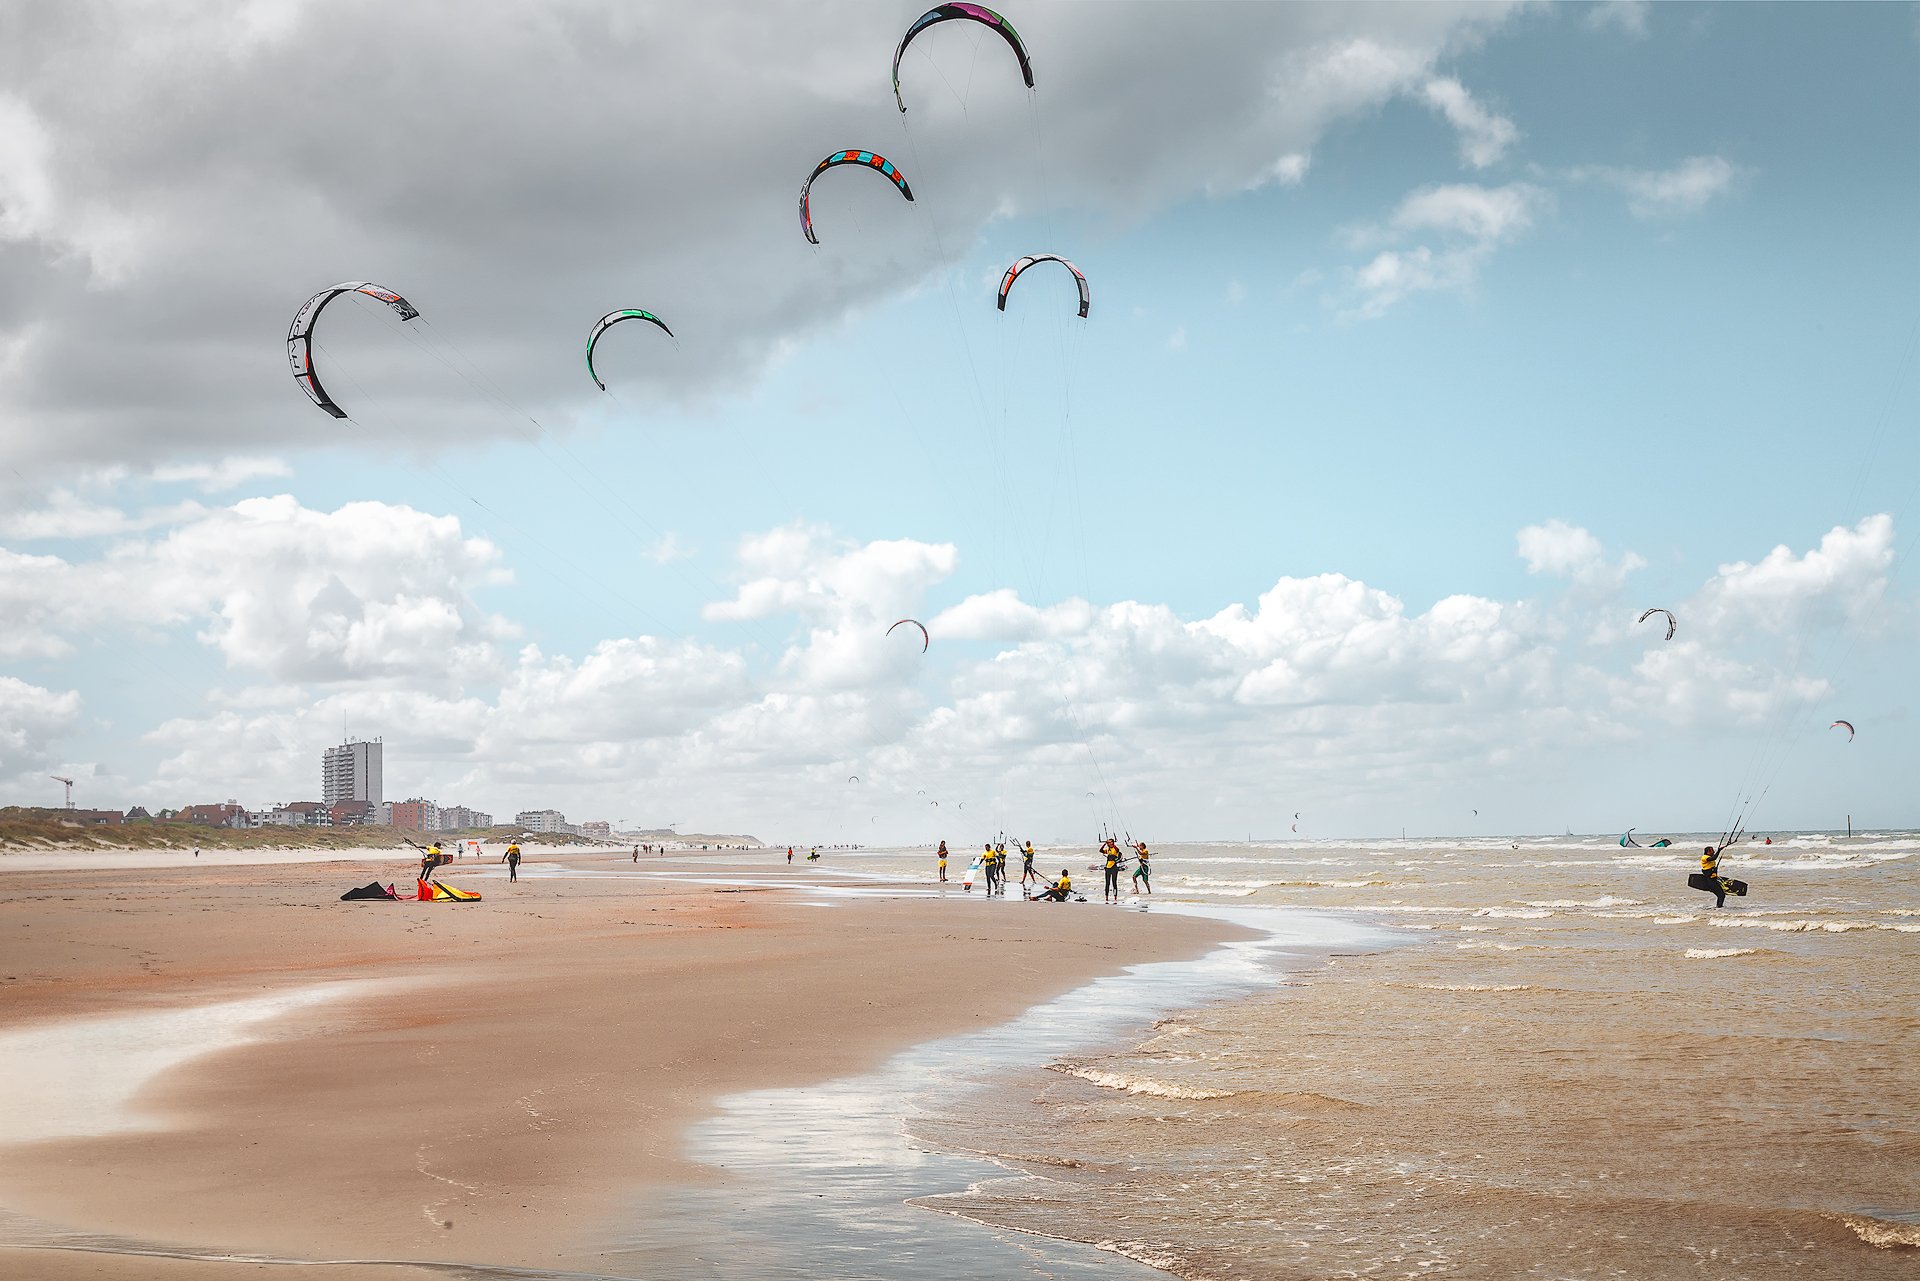 пляж, море, небо, облака, ветер, кайт, люди, кайт борд, бельгия, Андрей Огнев